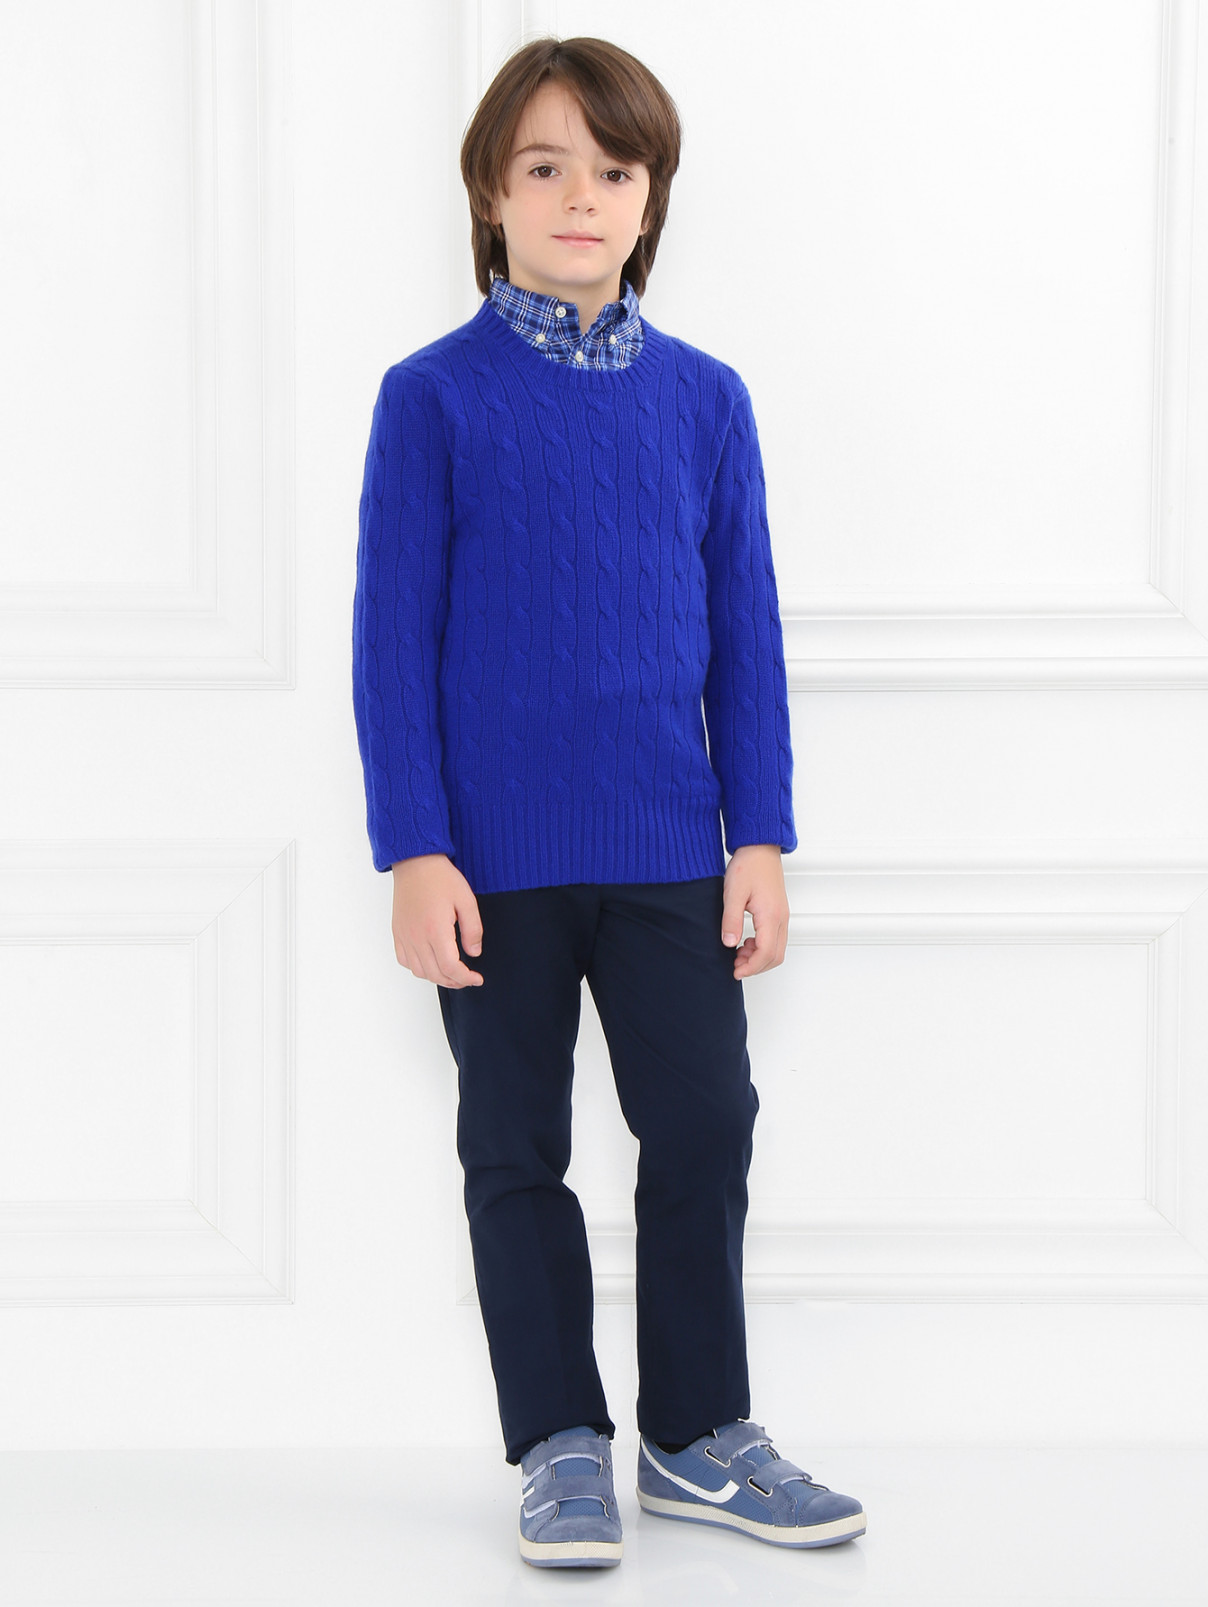 Джемпер из кашемира фактурной вязки Ralph Lauren  –  Модель Общий вид  – Цвет:  Синий